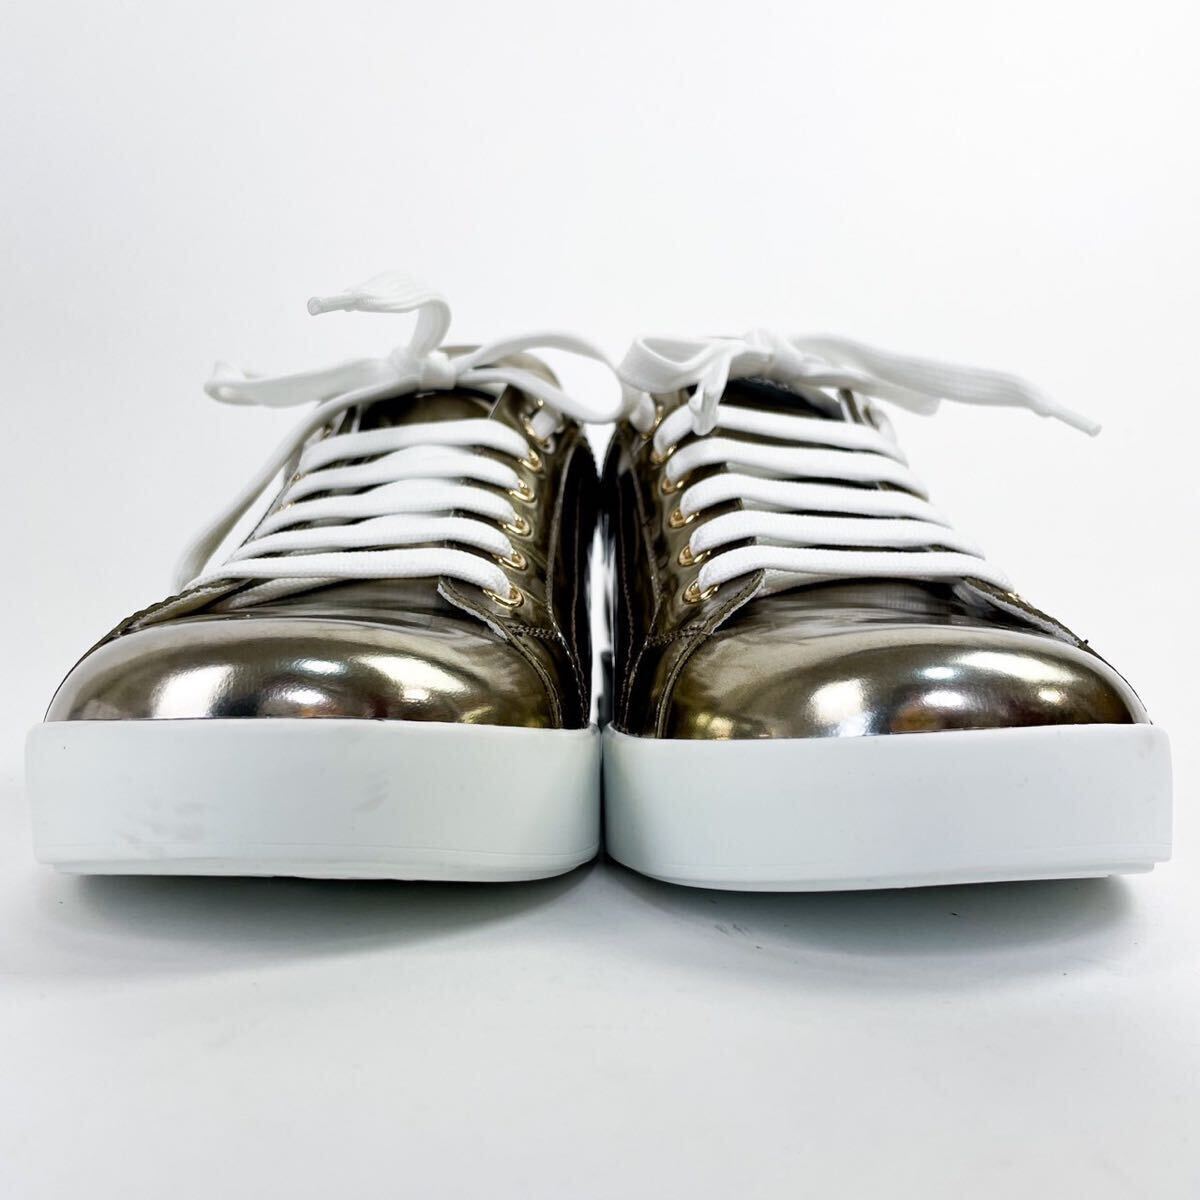 未使用級 箱付き DOLCE&GABBANA ドルチェ&ガッバーナ スニーカー 靴 9 28cm金 ゴールド ロゴ メンズの画像3